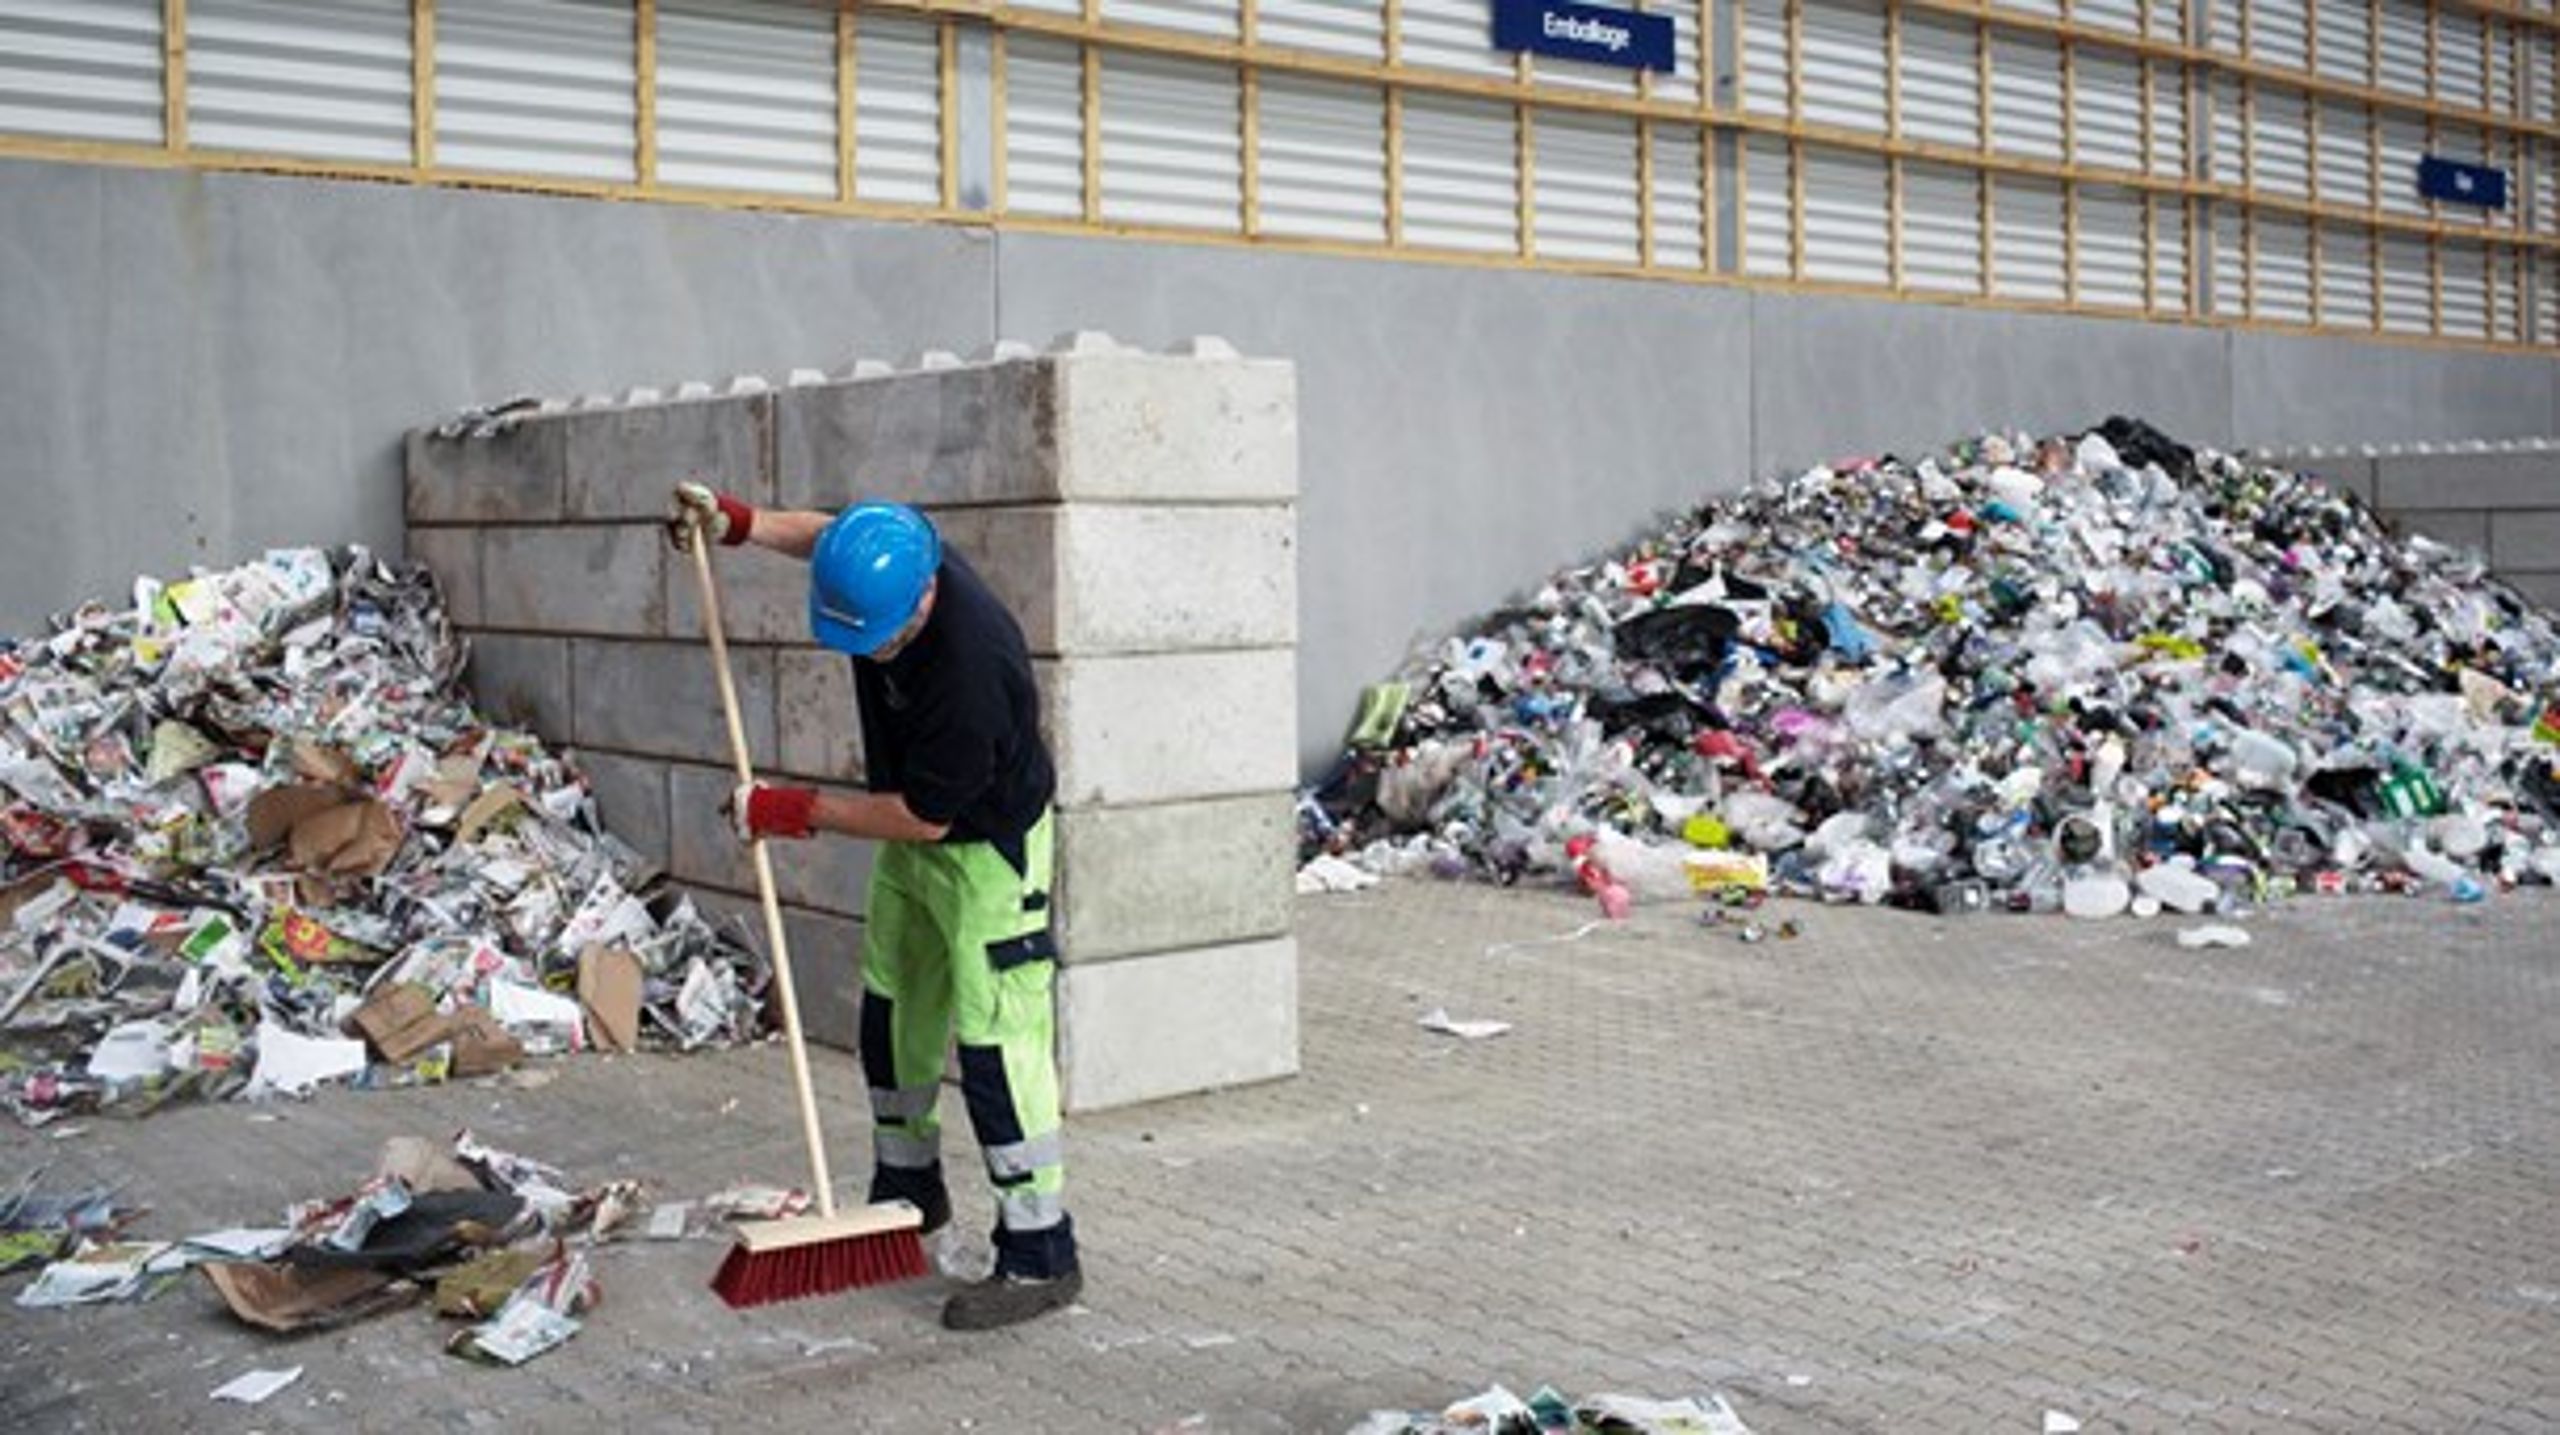 Kommunale sorteringsanlæg kunne sagtens håndtere affald fra virksomheder, skriver Dansk Affaldsforening. &nbsp; &nbsp; &nbsp; &nbsp; &nbsp; &nbsp;&nbsp;